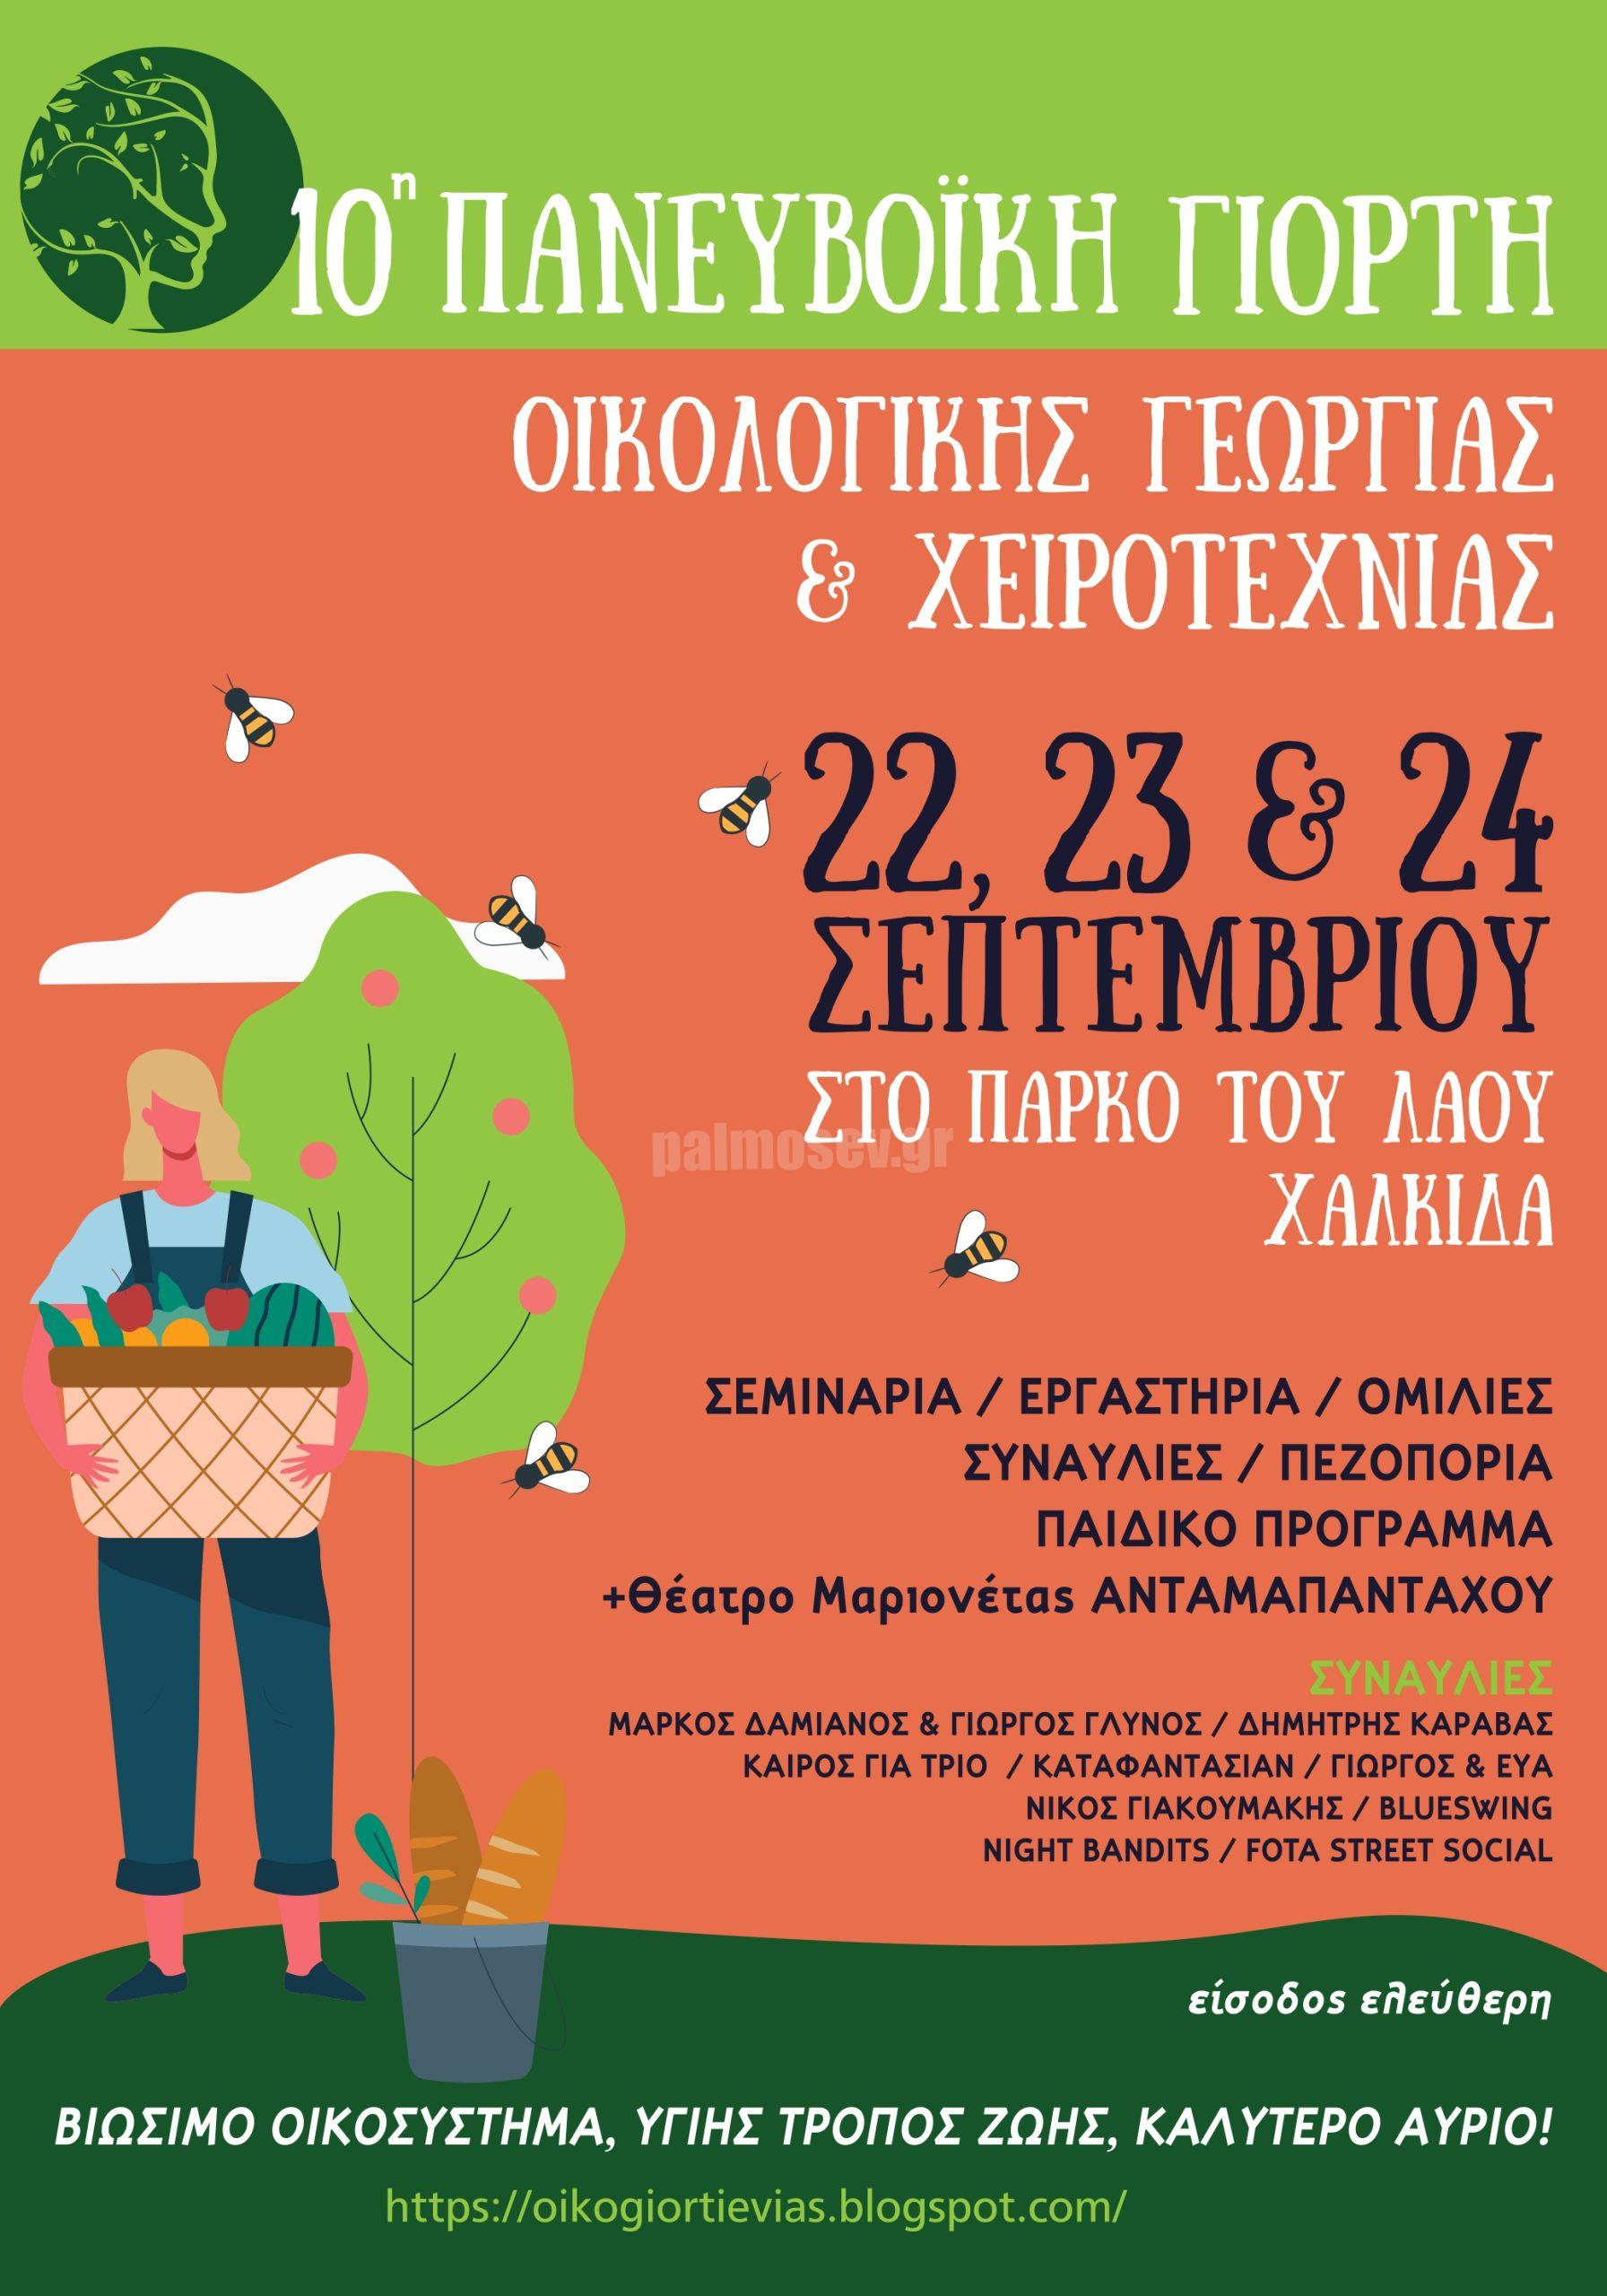 10η Πανευβοϊκή Γιορτή Οικολογικής Γεωργίας και Χειροτεχνίας – Παρασκευή 22, Σάββατο 23 και Κυριακή 24 Σεπτεμβρίου 2023